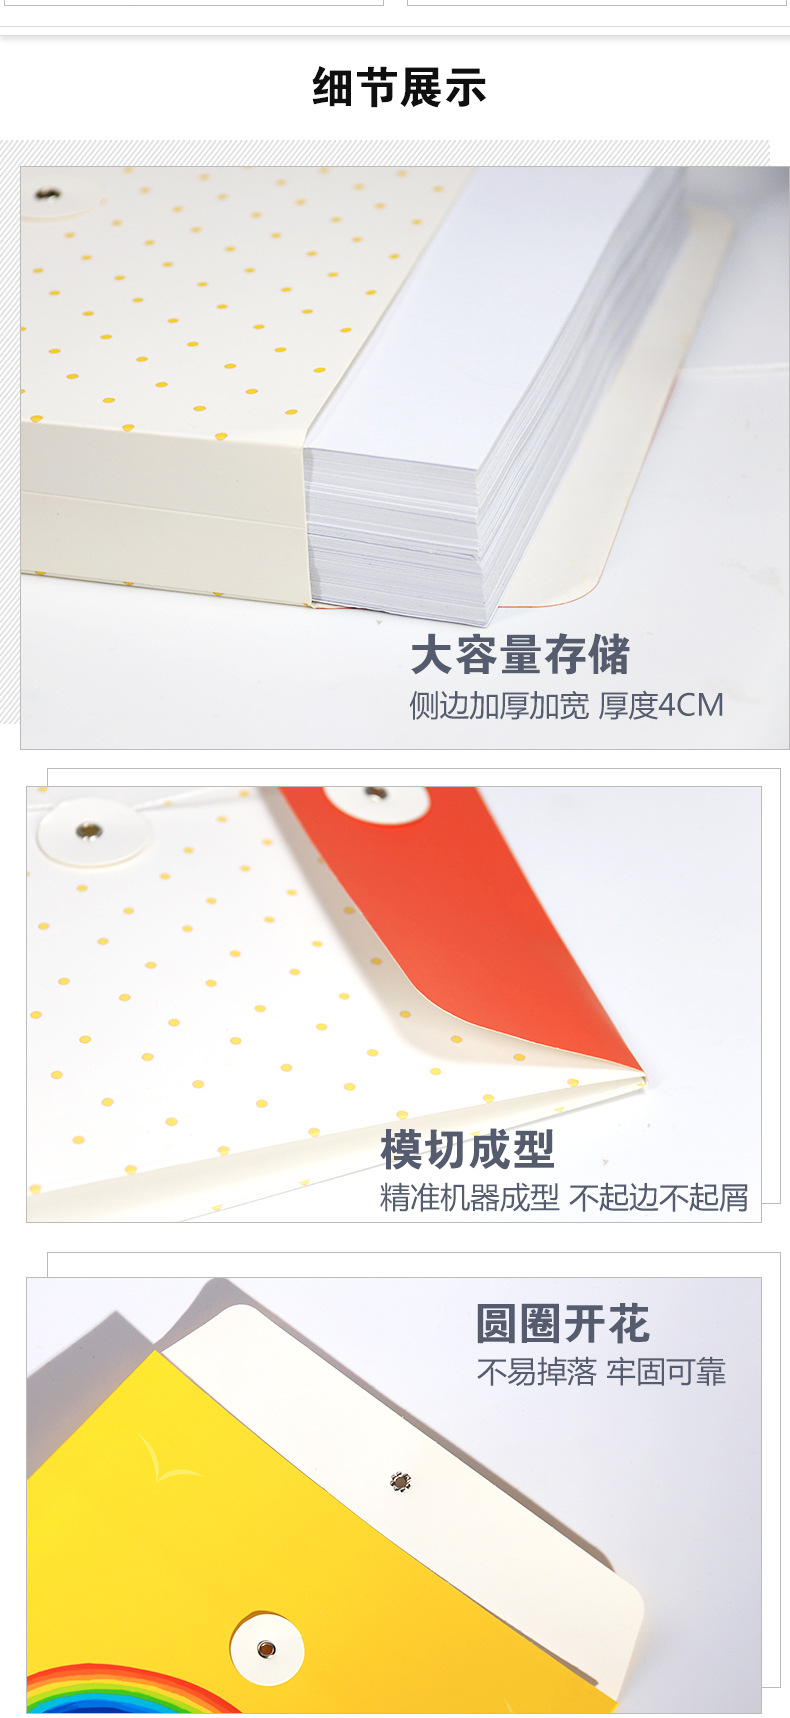 档案袋定制 厂家定做a4牛皮纸档案袋定做 文件袋生产定制订做印刷